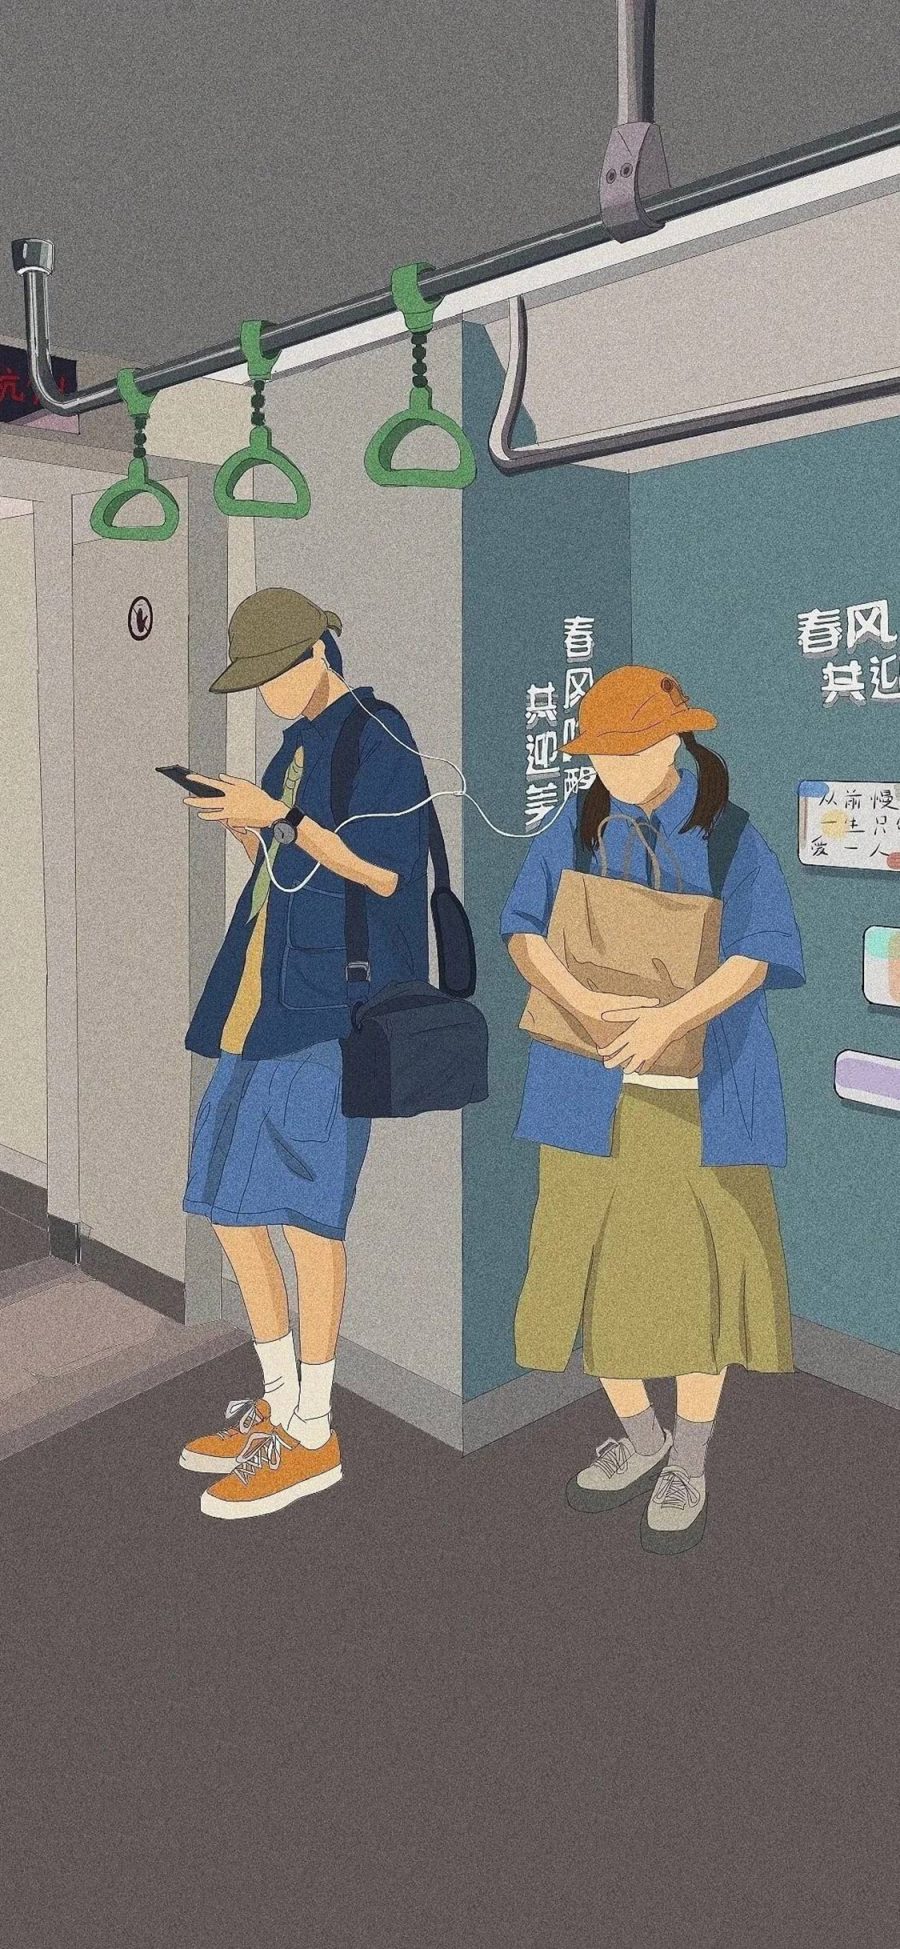 [2436×1125]地铁 插图 男孩 女孩 苹果手机动漫壁纸图片